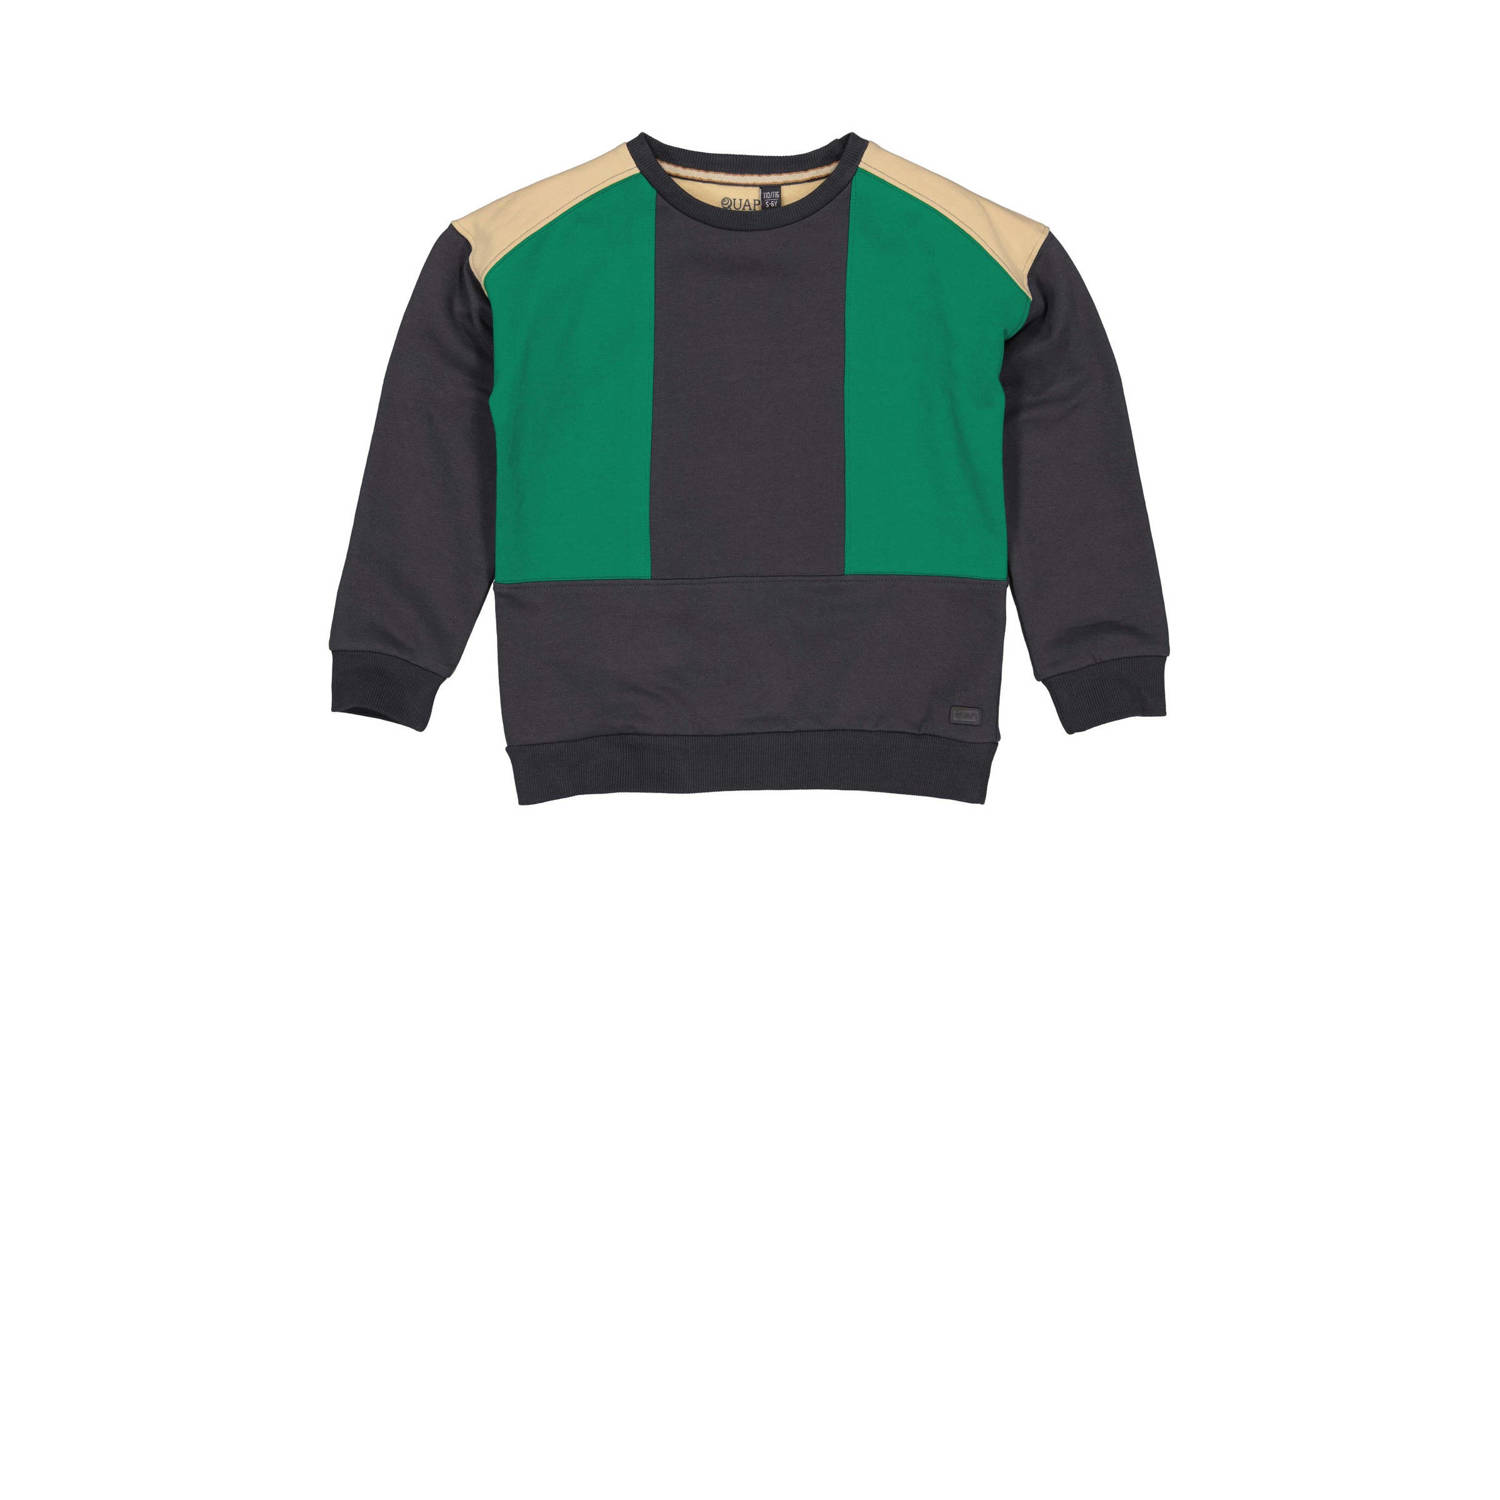 Quapi sweater AERT antraciet groen beige Grijs 110 116